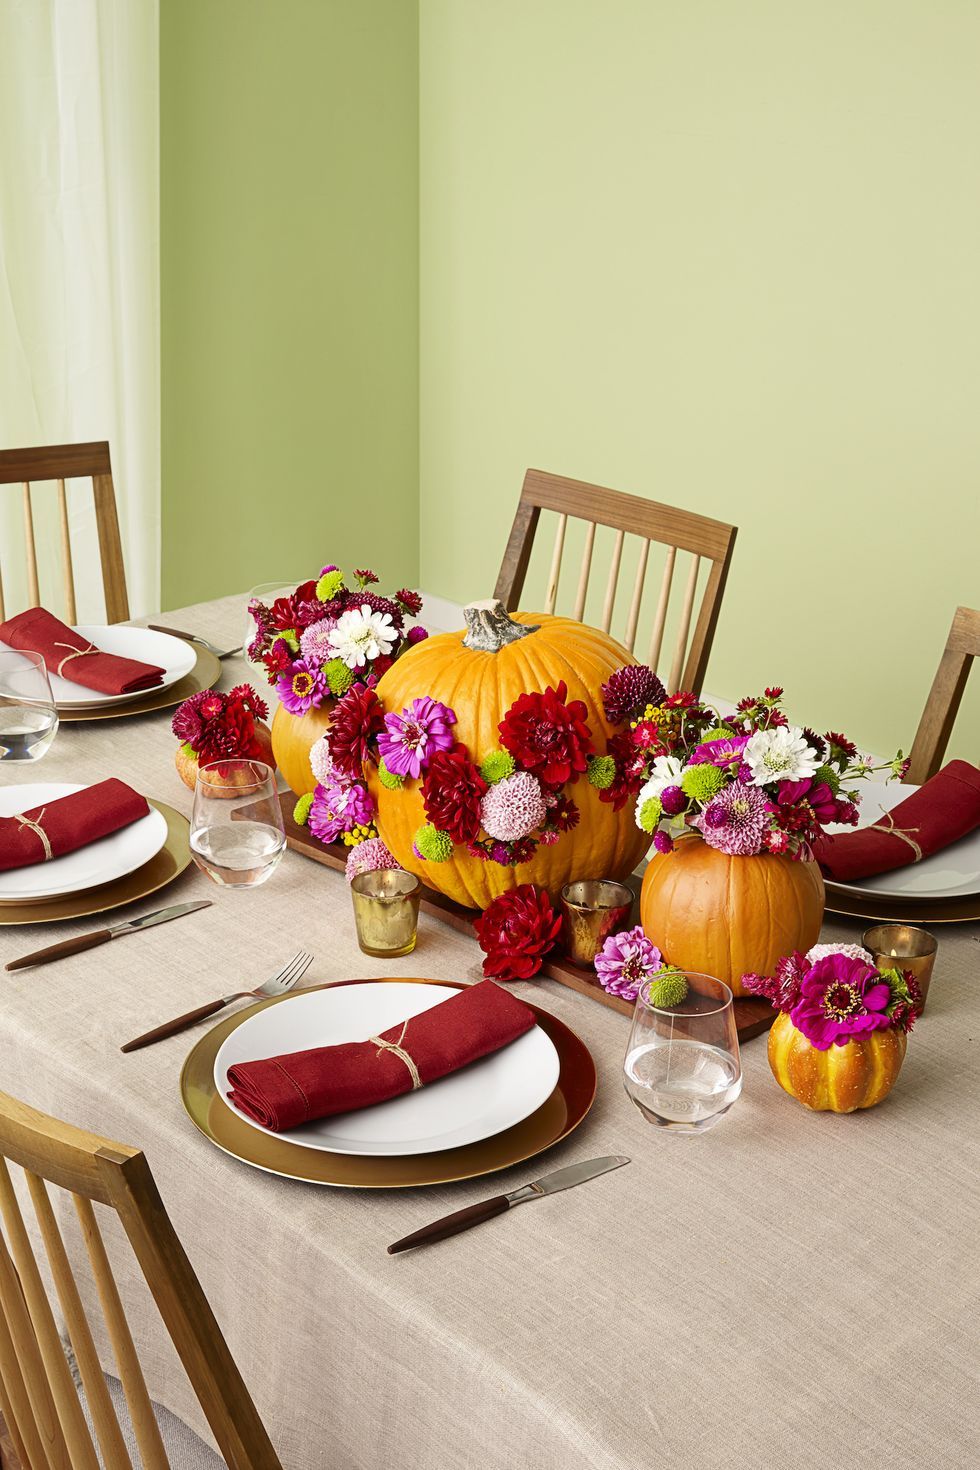 Característica Rusia huella dactilar 57 Easy Thanksgiving Decorations - Cute and Simple Decor Ideas for  Thanksgiving